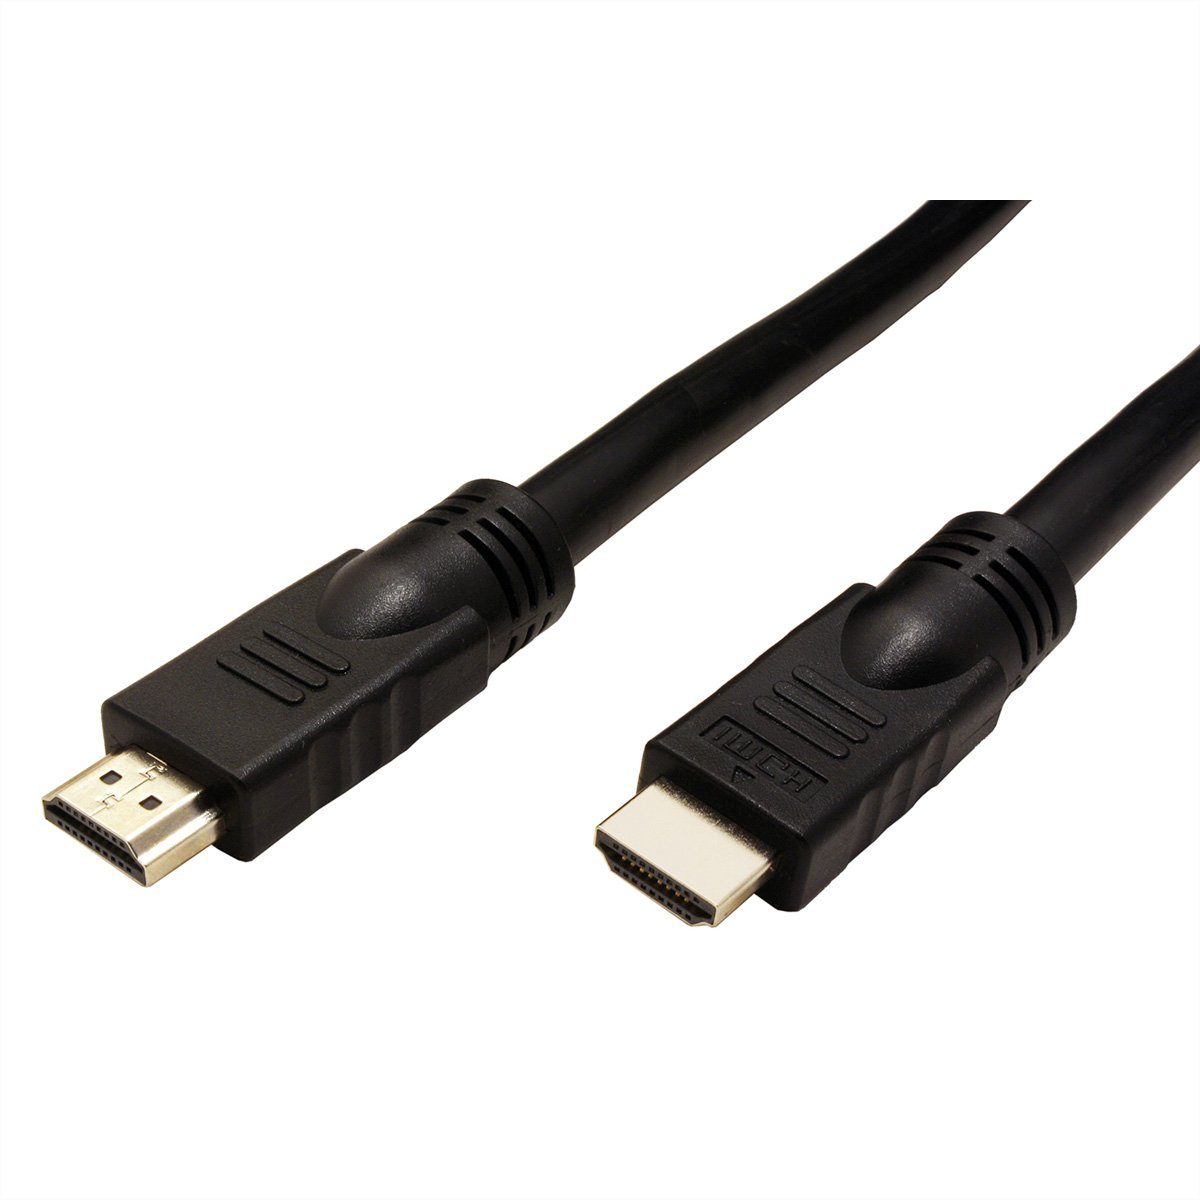 ROLINE UHD HDMI 4K Kabel, mit Repeater Audio- & Video-Adapter HDMI Typ A Männlich (Stecker) zu HDMI Typ A Männlich (Stecker), 1000.0 cm